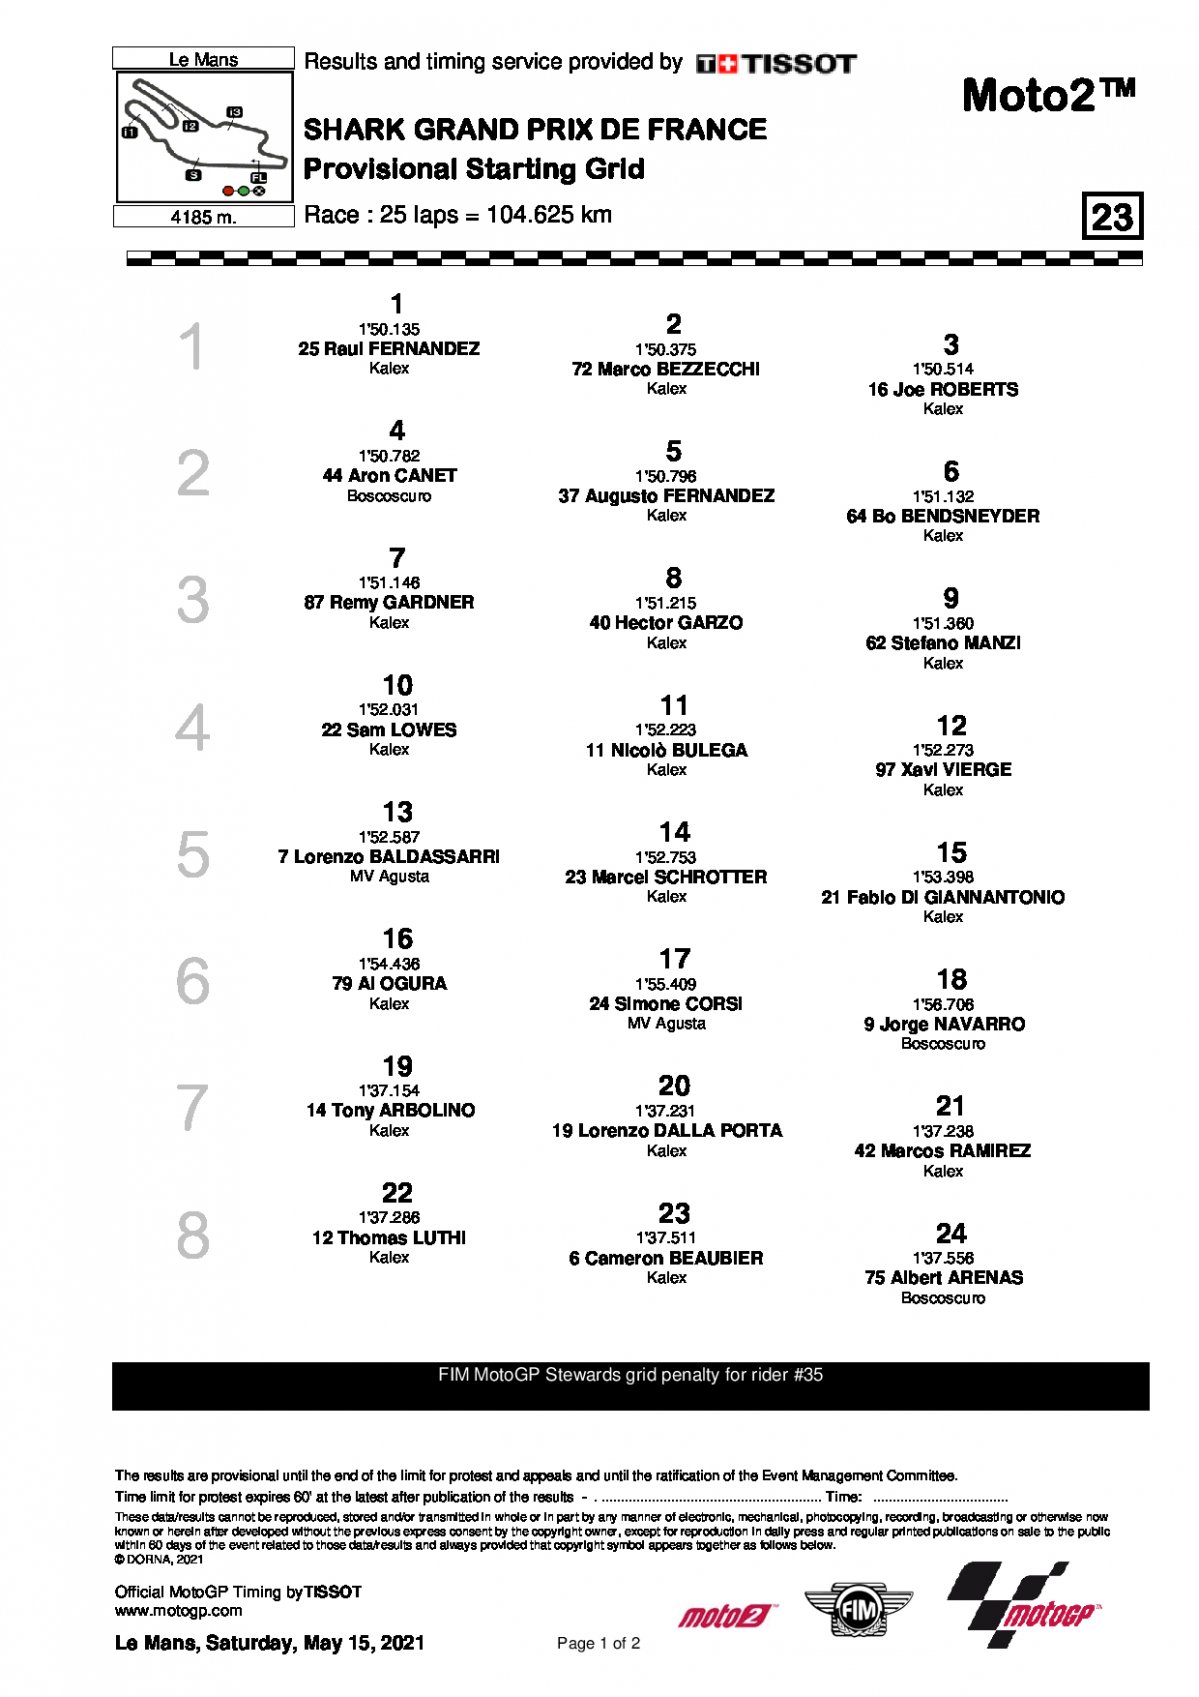 Стартовая решетка Гран-При Франции, Moto2 (16/05/2021)